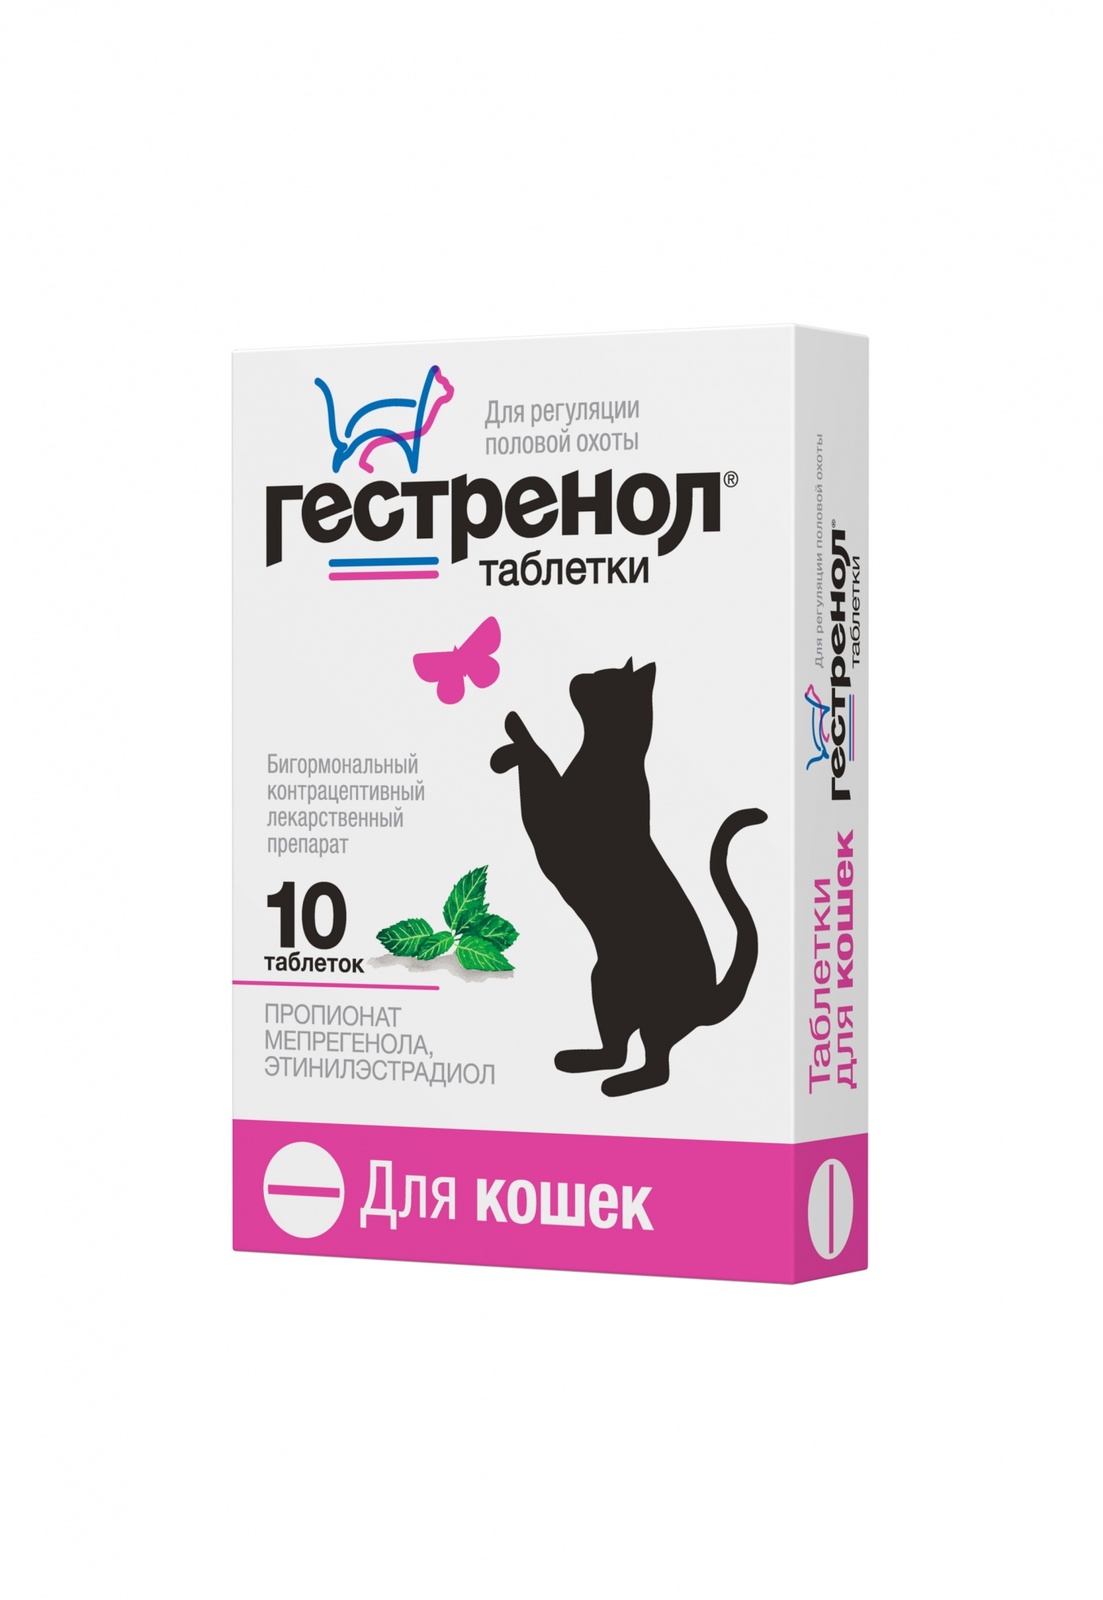 Астрафарм гестренол таблетки для кошек для регуляции половой охоты, 10 таб. (7 г)